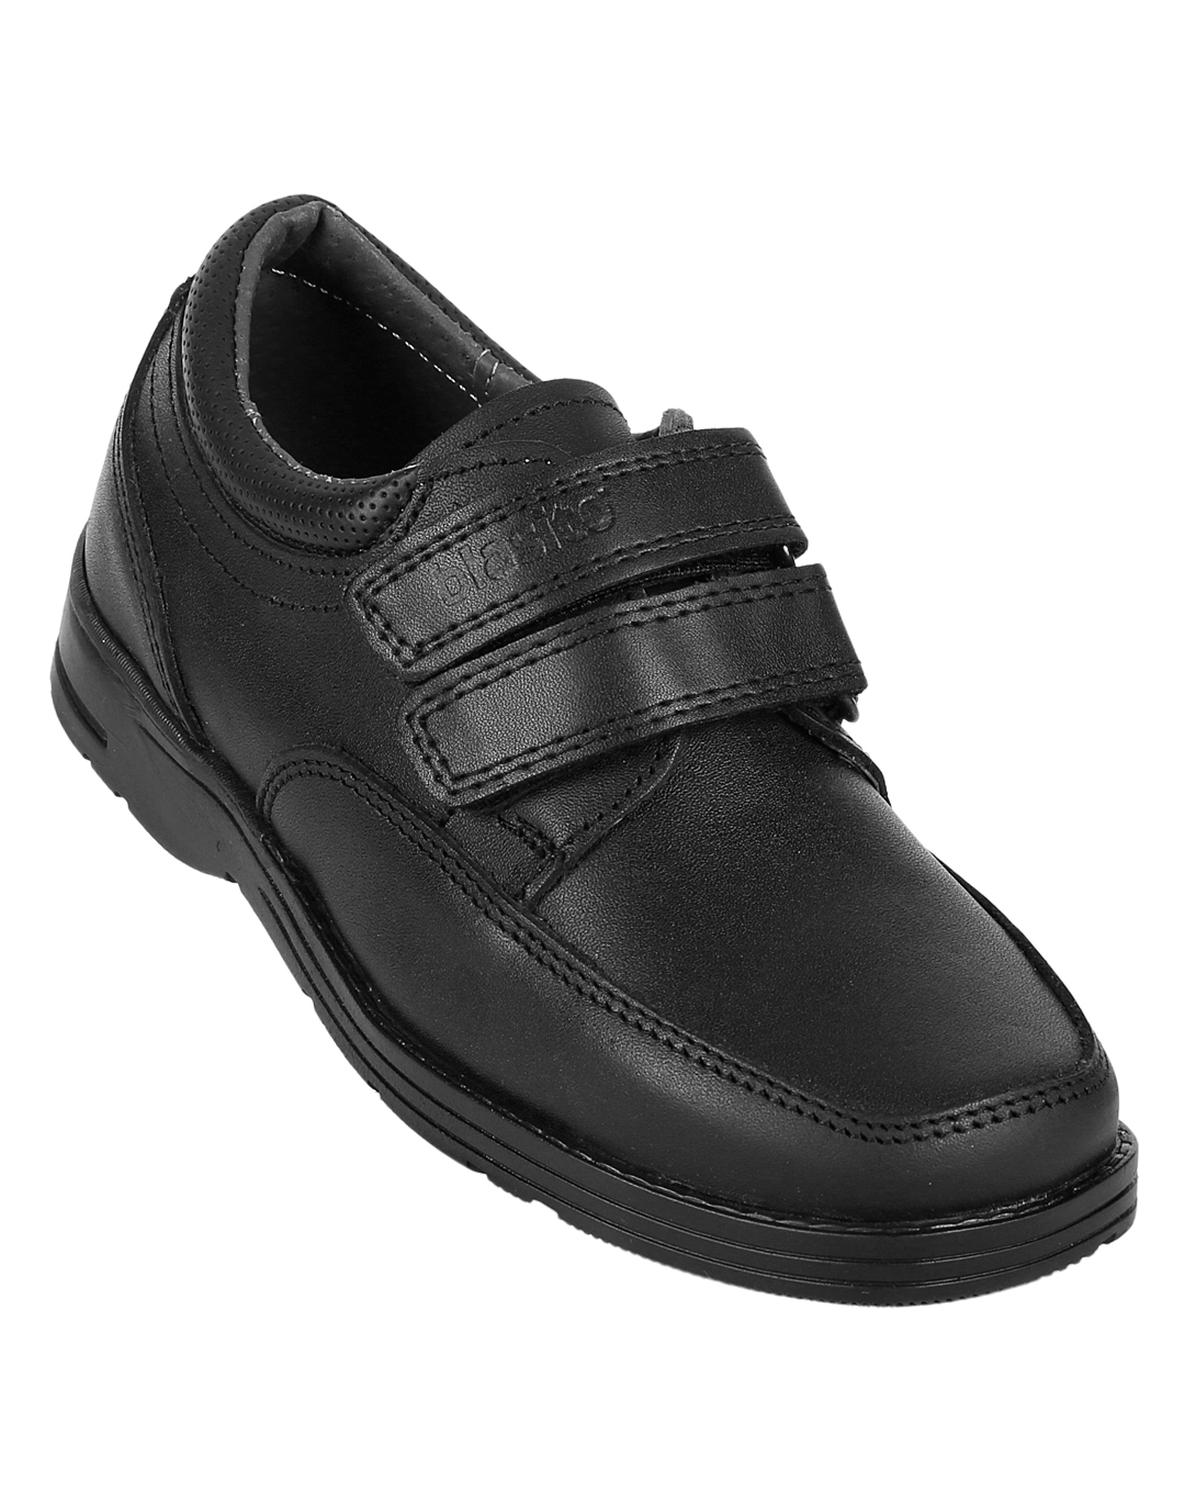 Zapato Escolar Niño Negro Piel Blasito 10603801